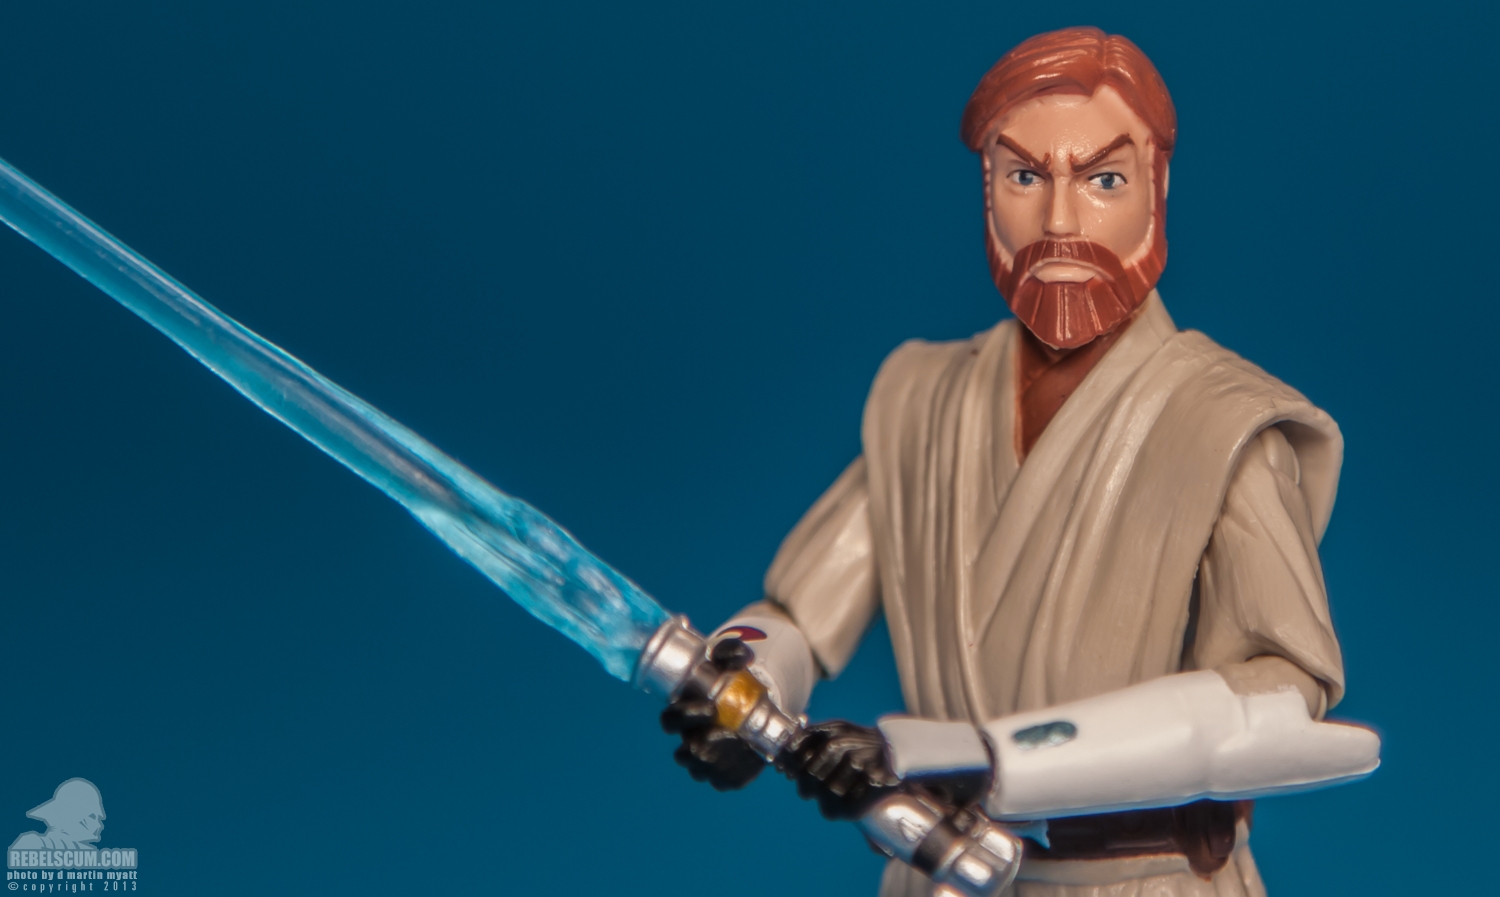 CW01_2013_Obi-Wan_Kenobi_ The_Clone_Wars_Star_Wars_Hasbro-14.jpg